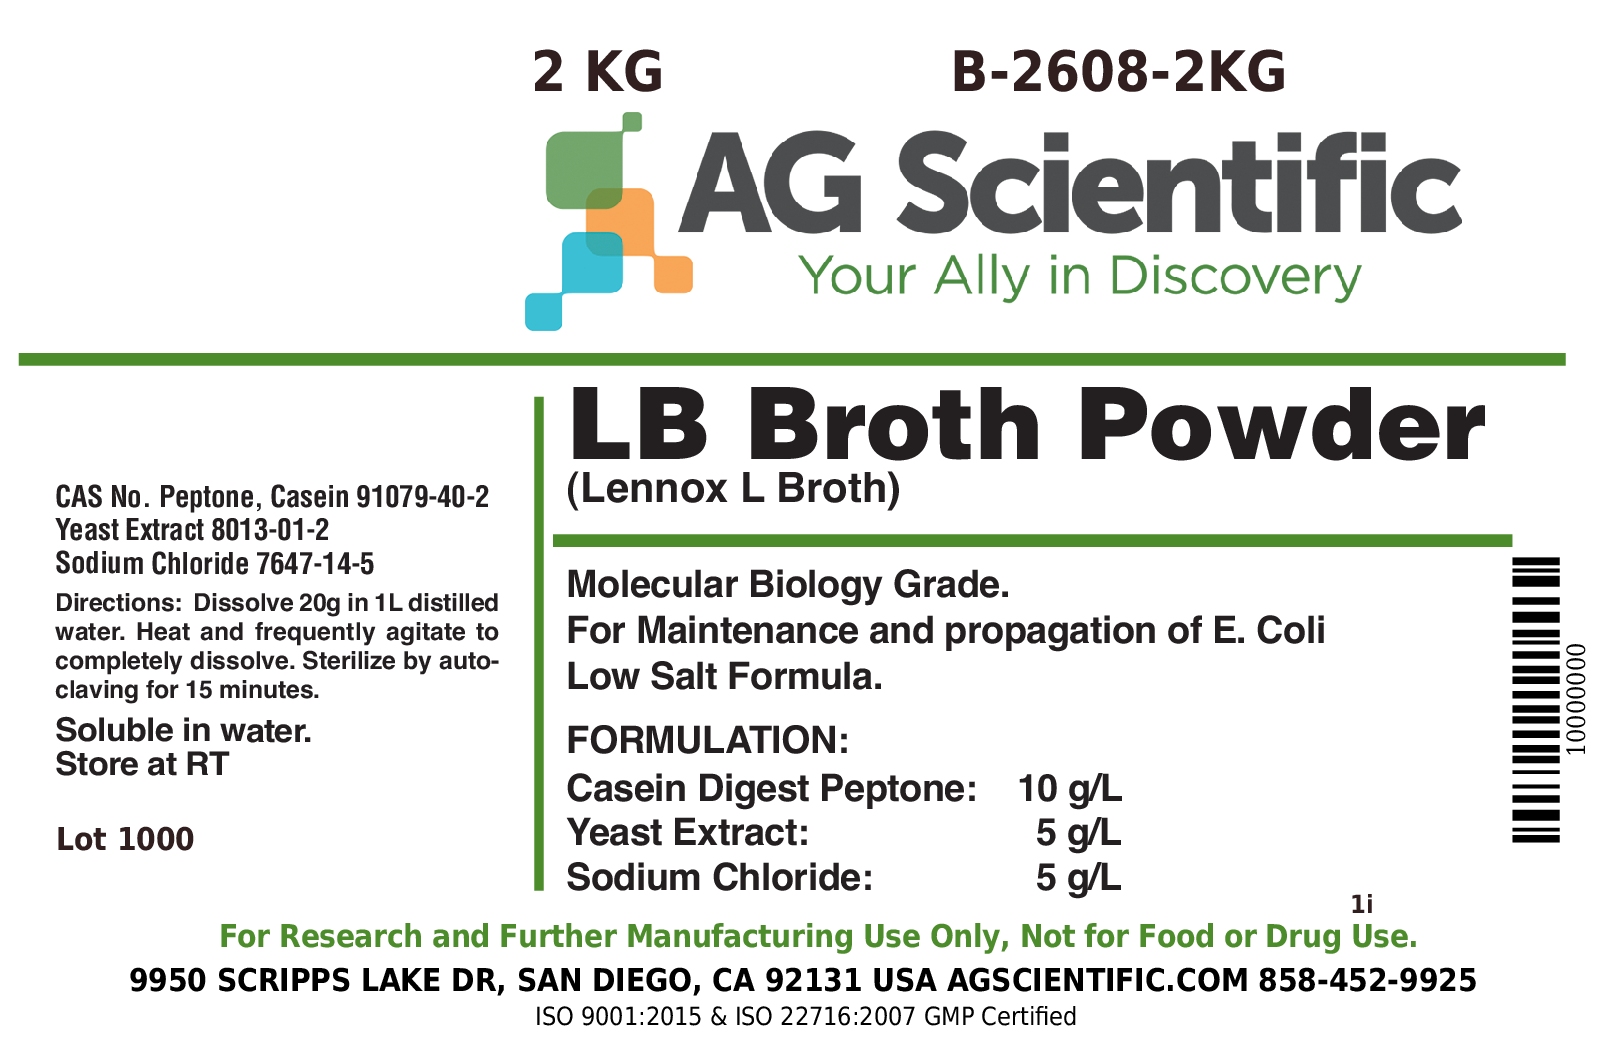 LB Broth [Lennox L Broth], Powder, 2 KG